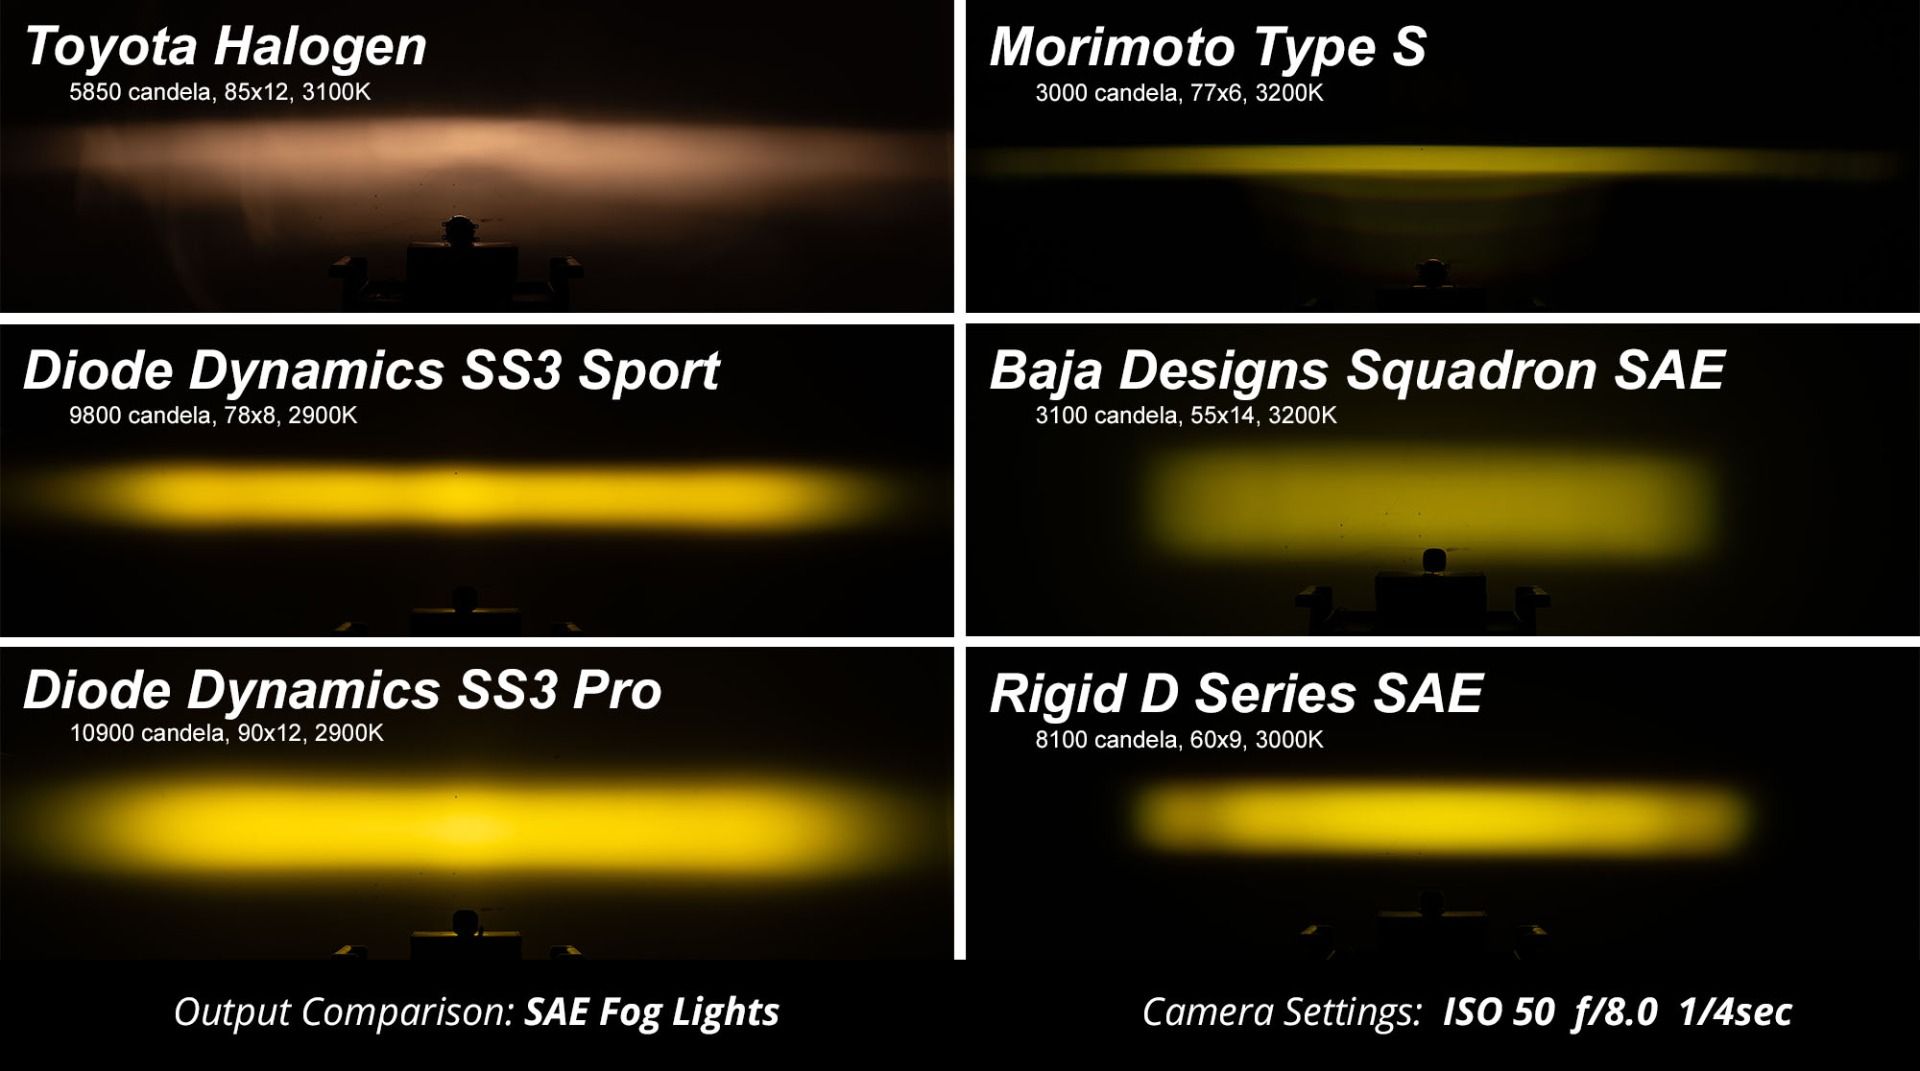 SS3 LED Fog Light Kit for 2013-2016 Ford C-Max Diode Dynamics-